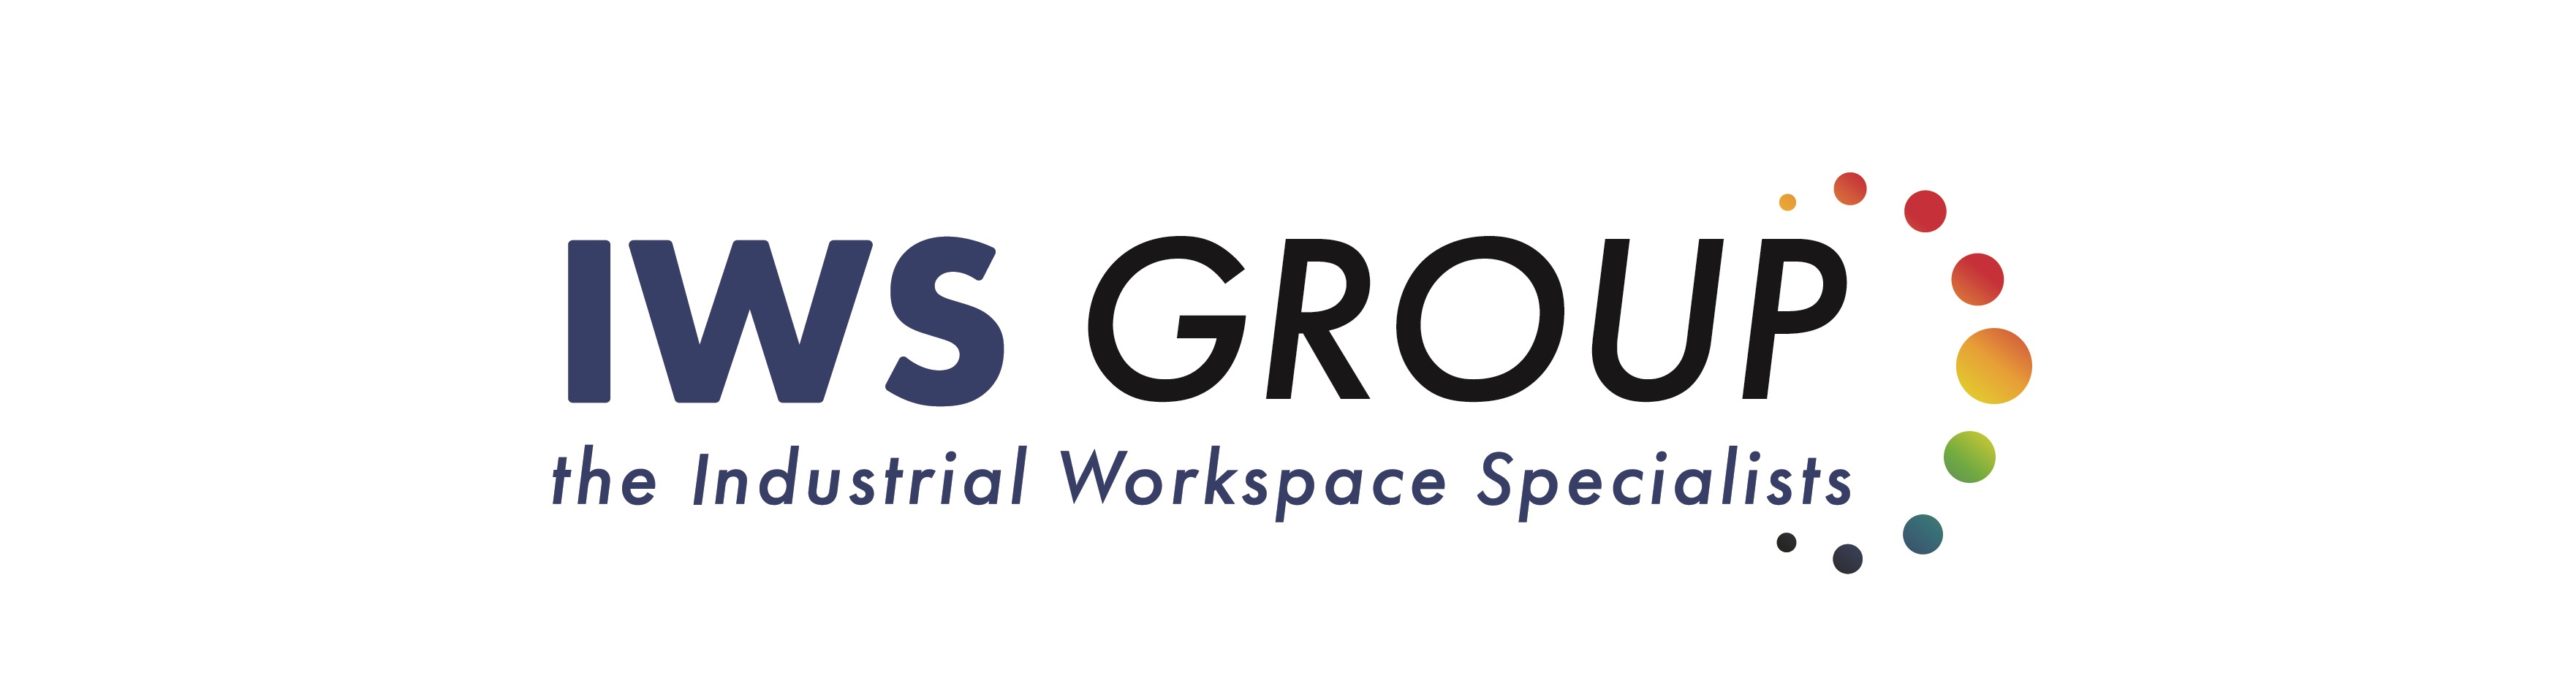 IWS Group Logo